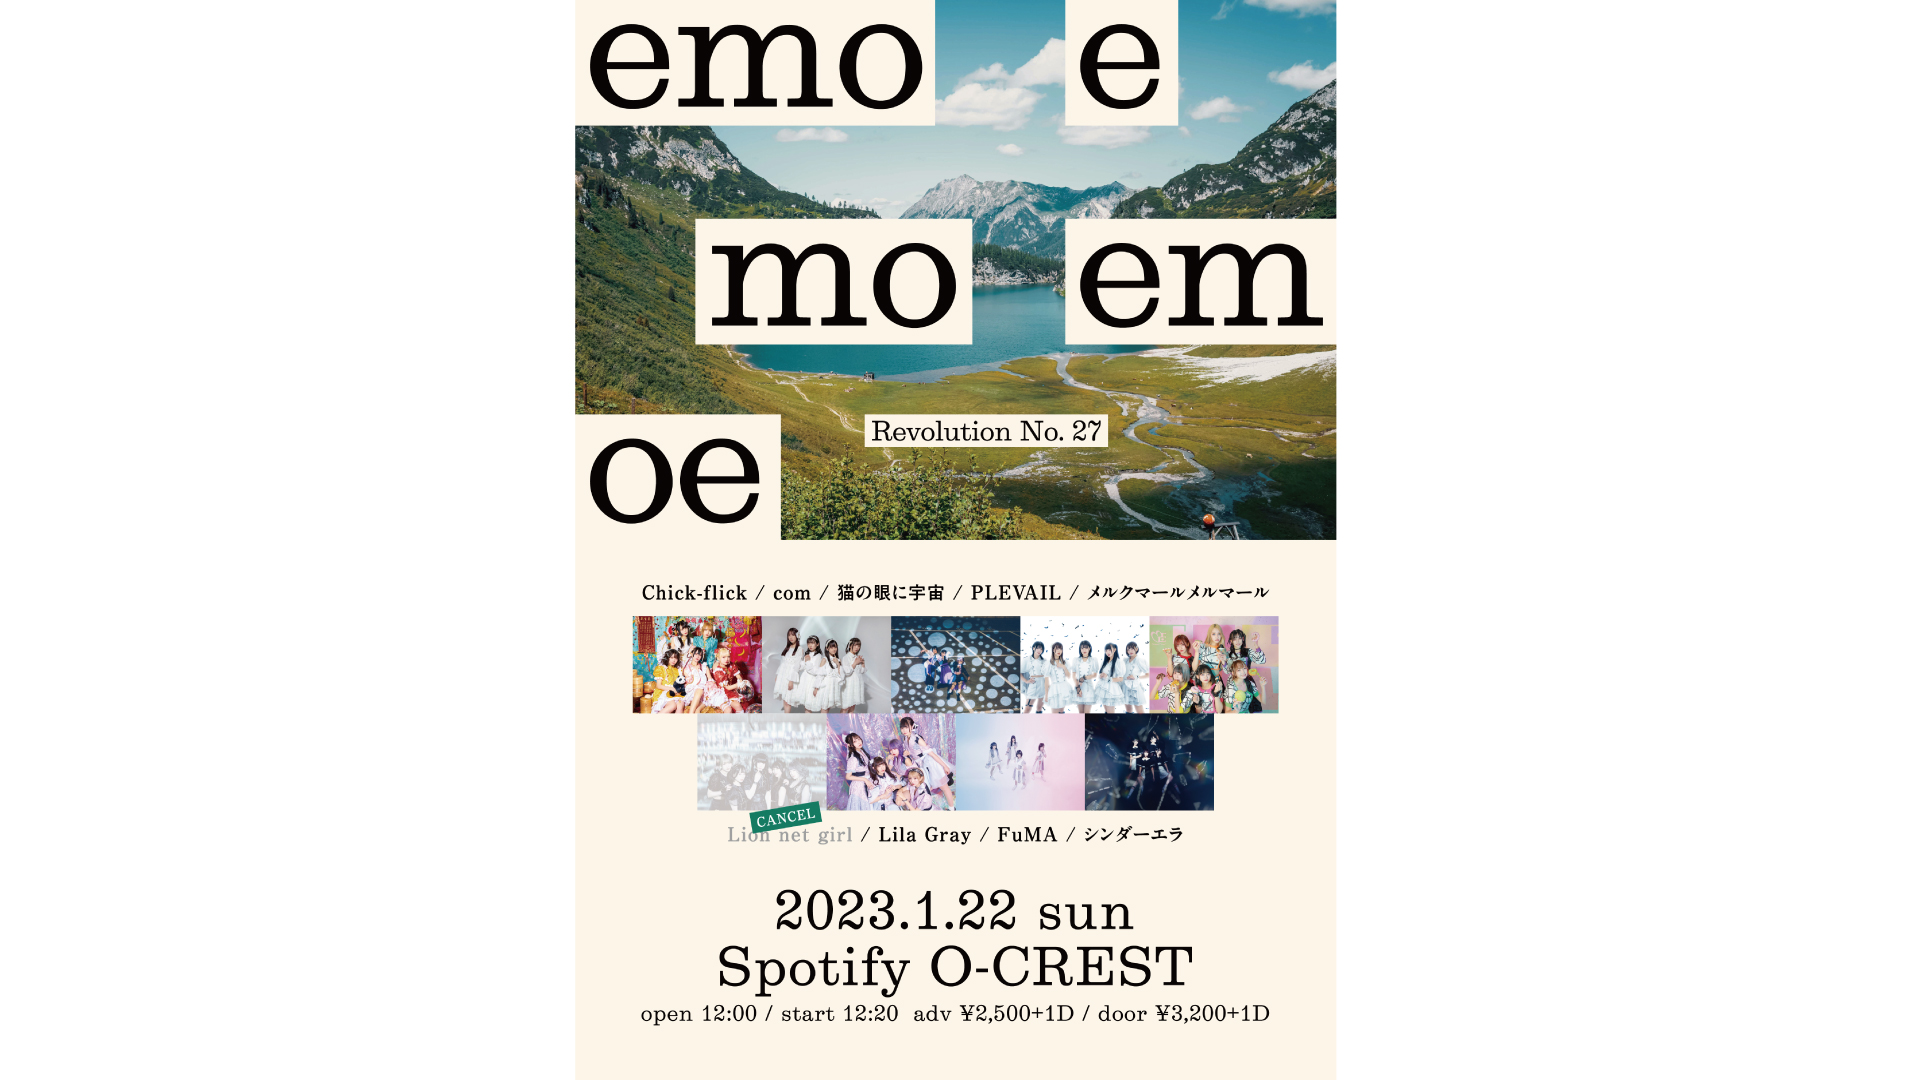 1/22 『emoemoemoe』 Revolution No. 27